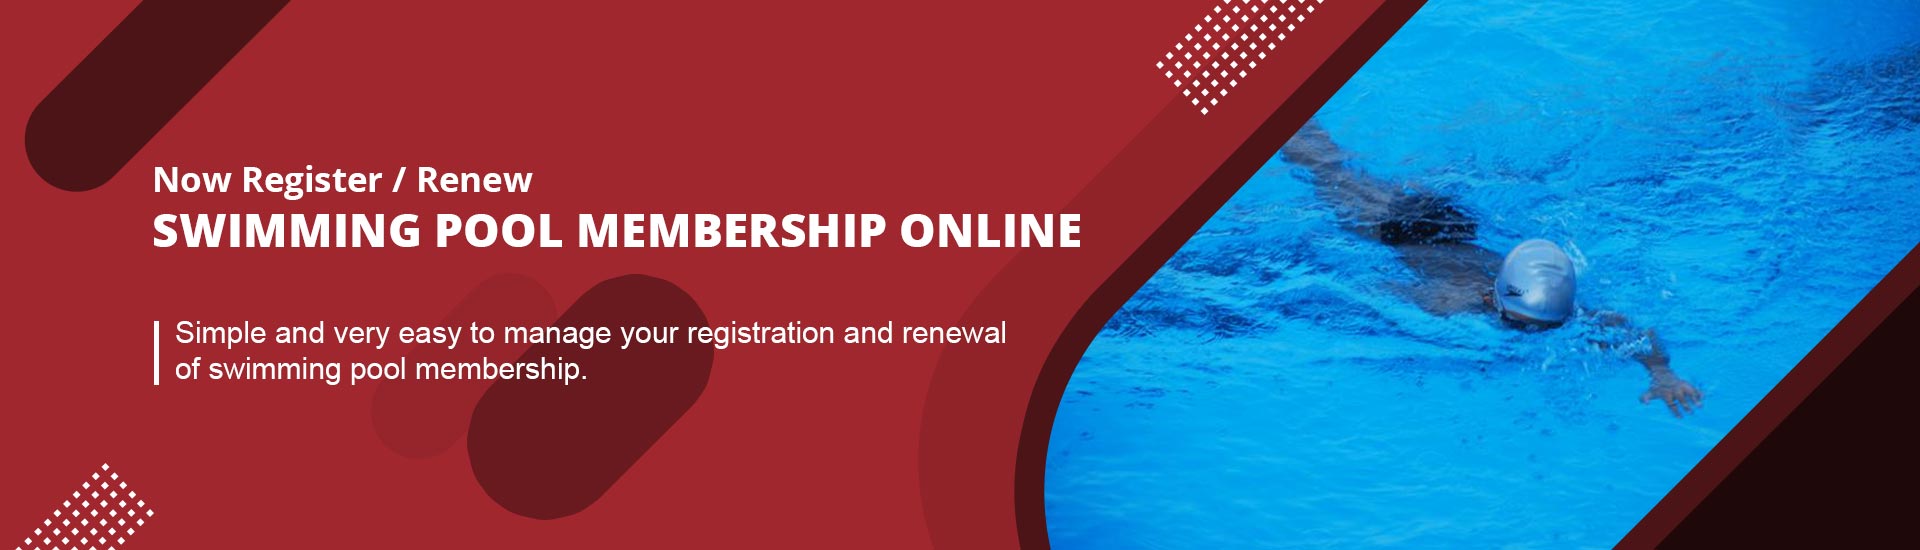 Swimming Pool Membership Registration and Renewal Online